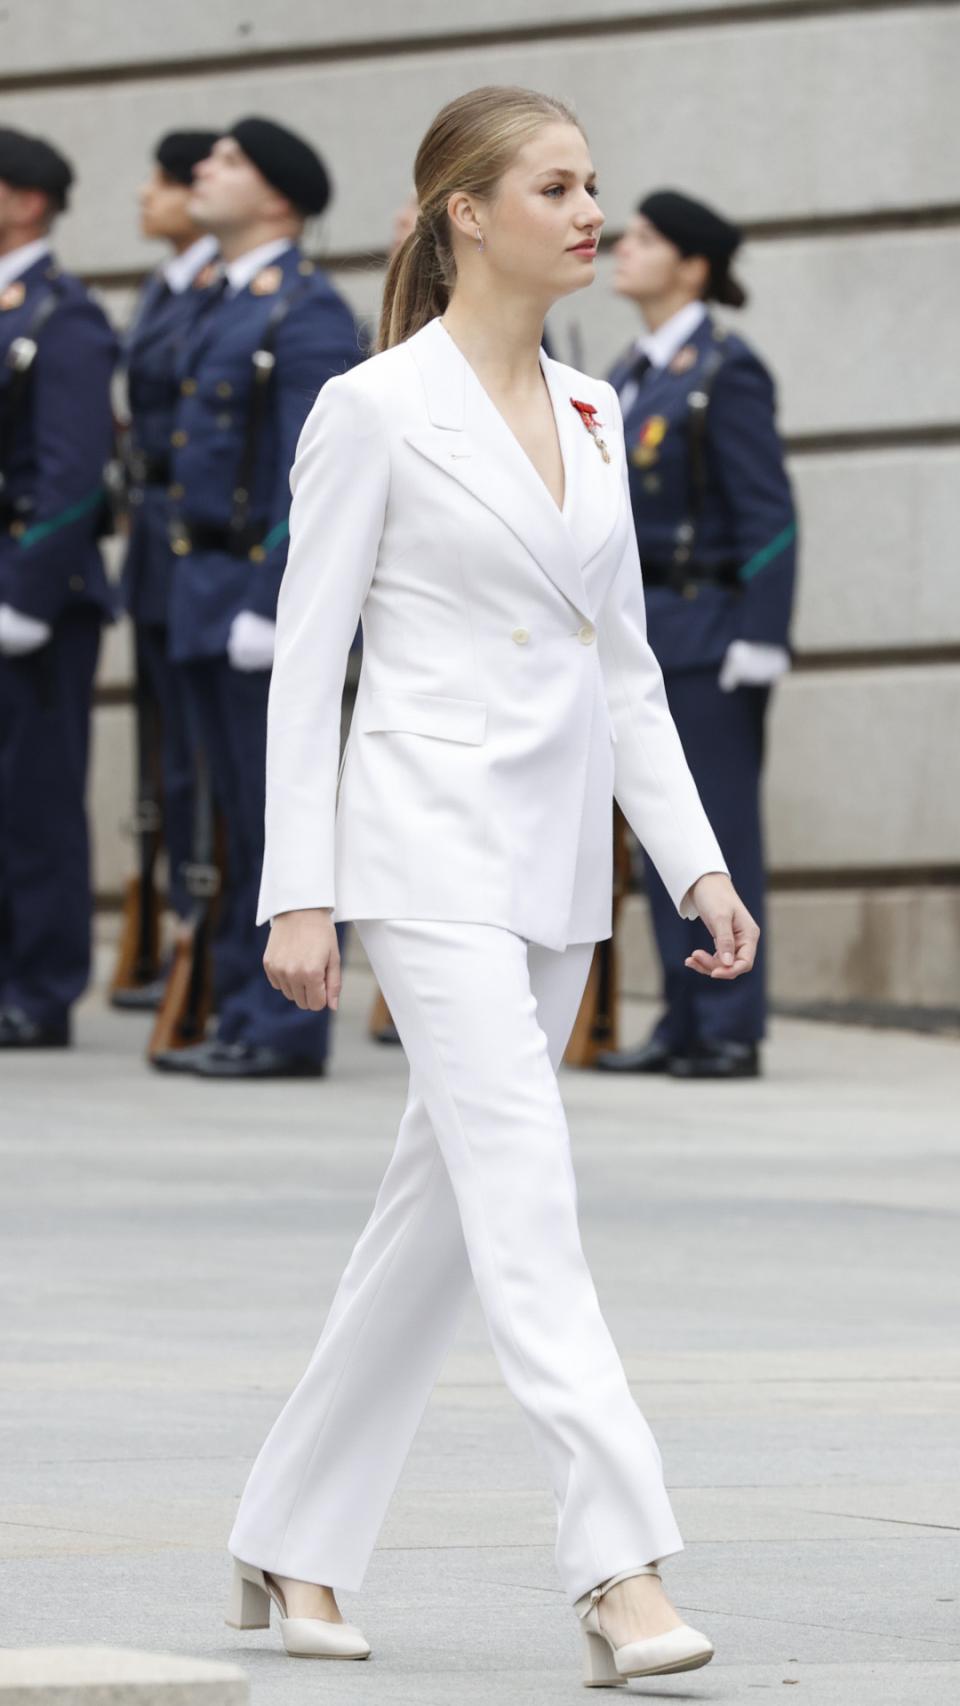 La Princesa de Asturias a su entrada al Congreso de los Diputados.